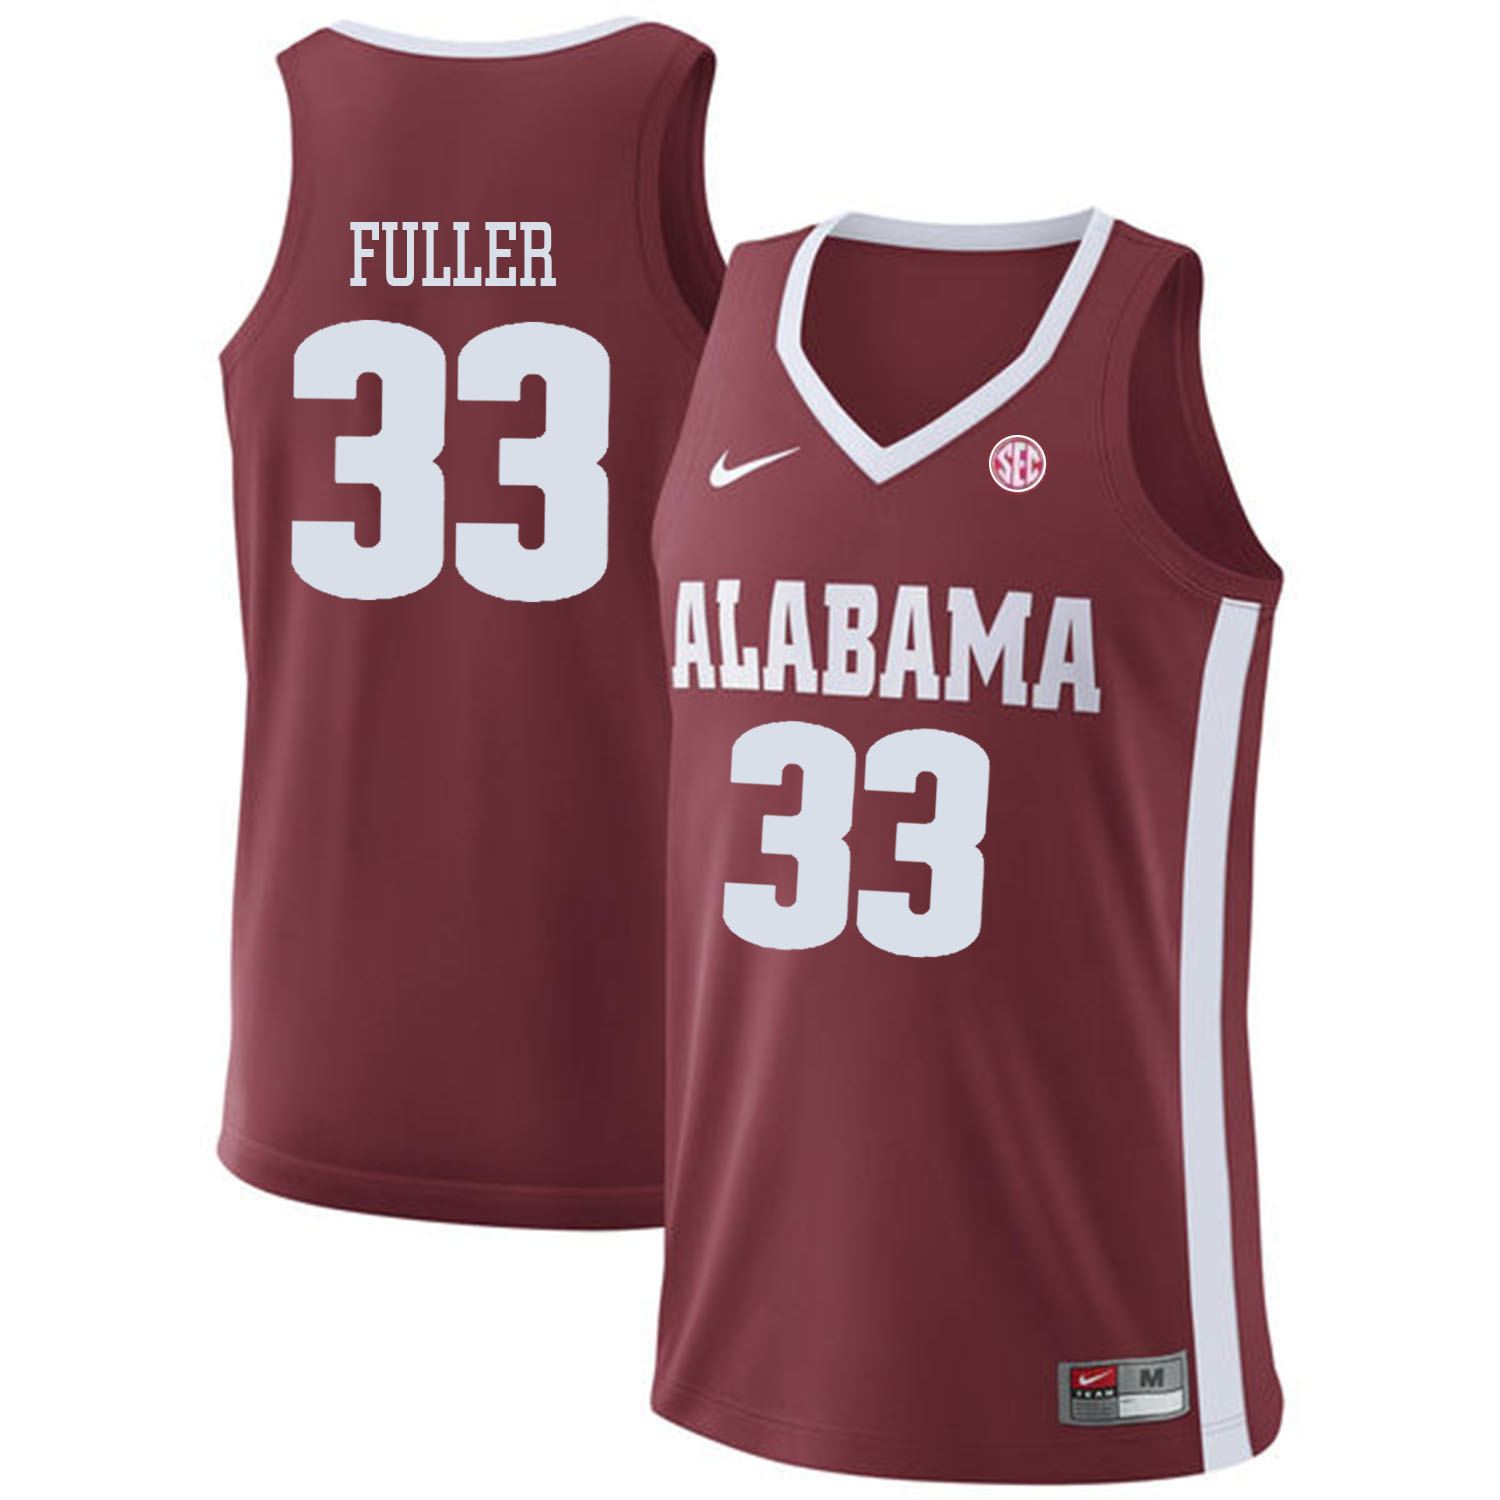 Alabama Crimson Tide 33 Landon Fuller Red College Basketball Jersey